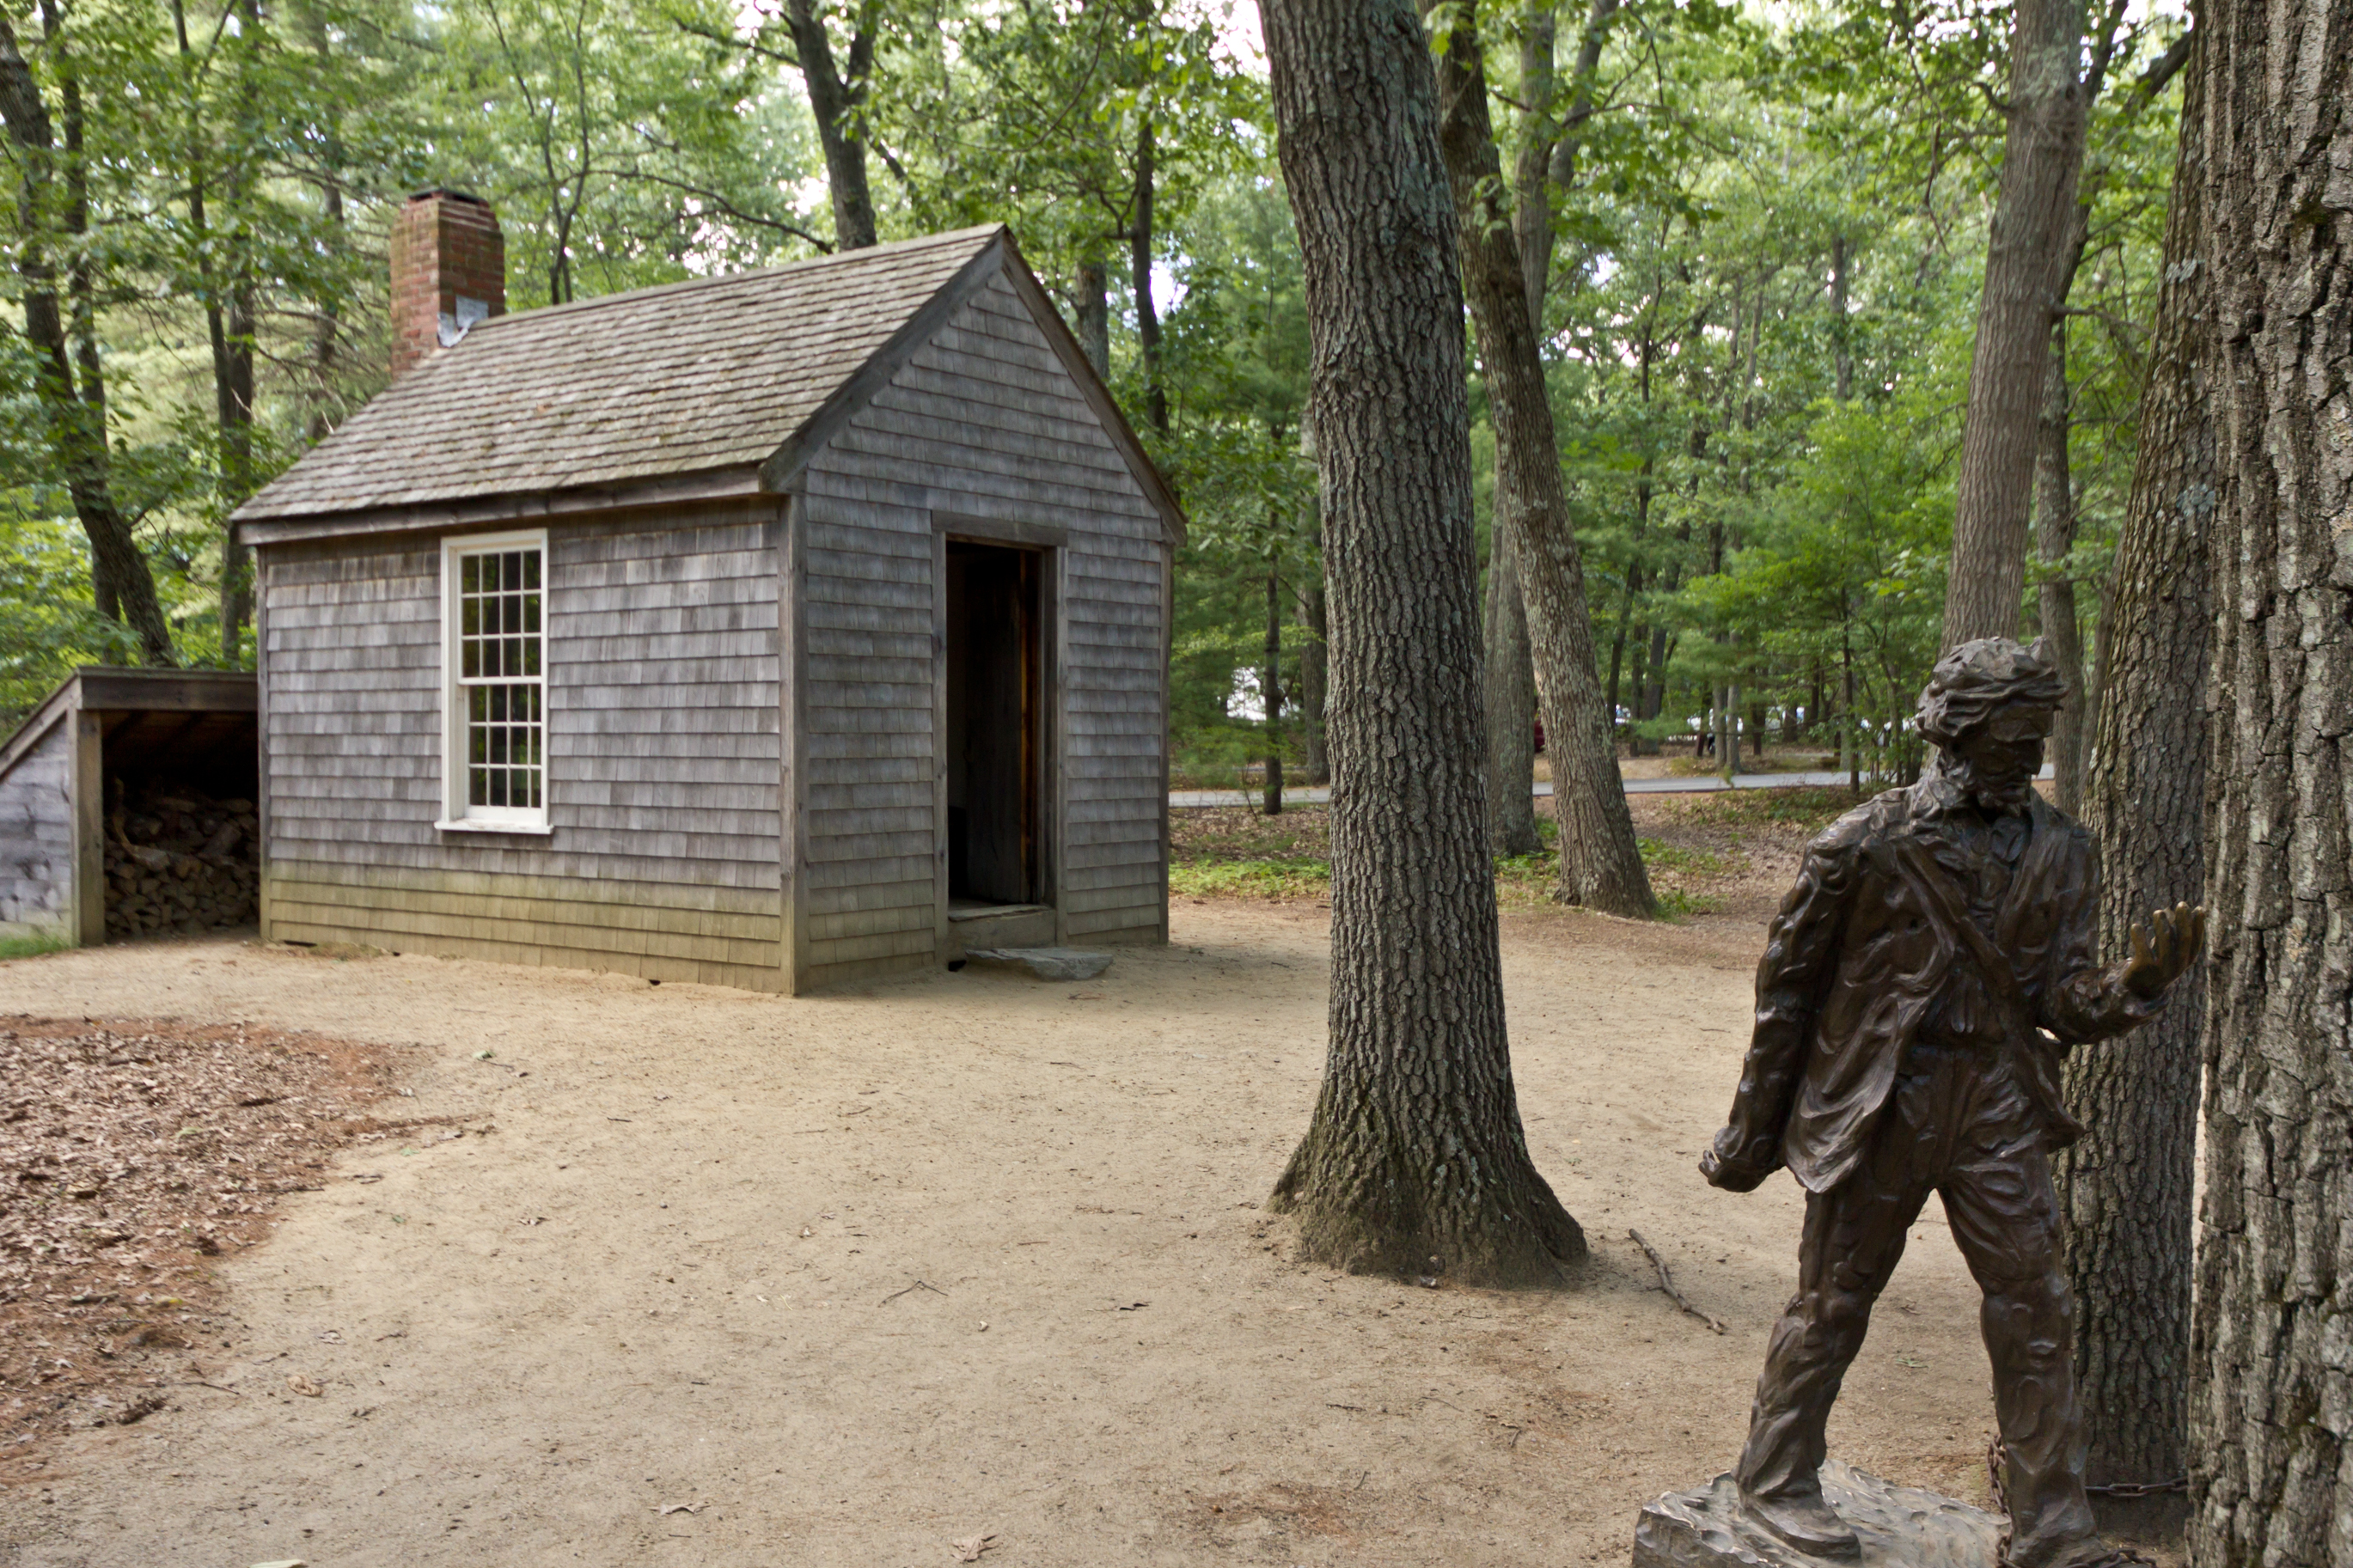 Mô hình tái hiện ngôi nhà của Thoreau và tượng ông gần hồ Walden.